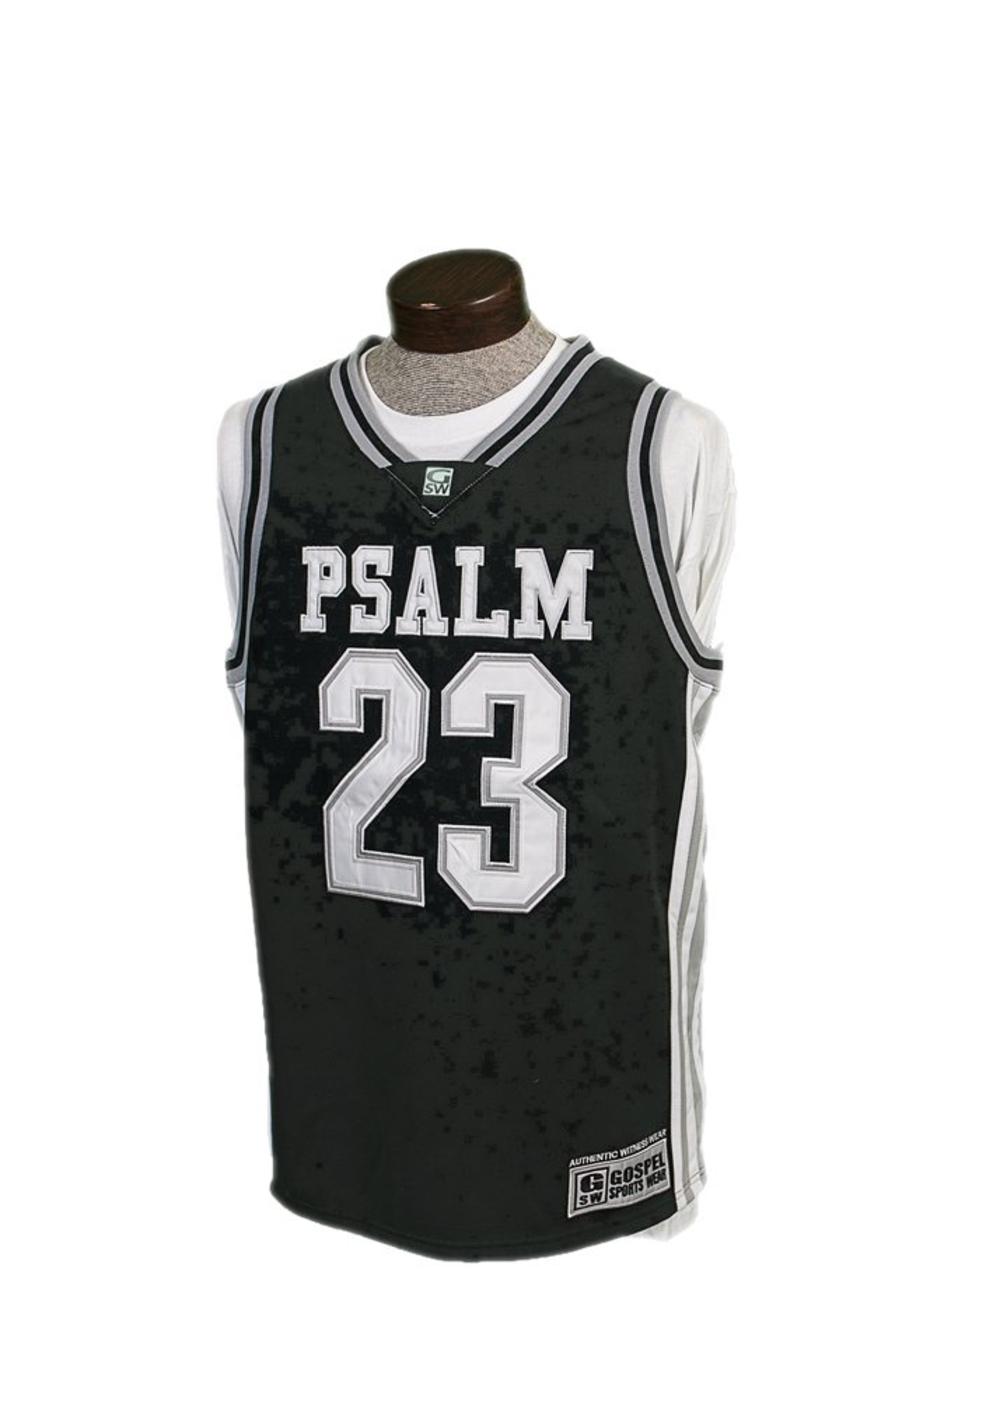 Gospel Sports Wear - Psalm 23 Basketball Jersey